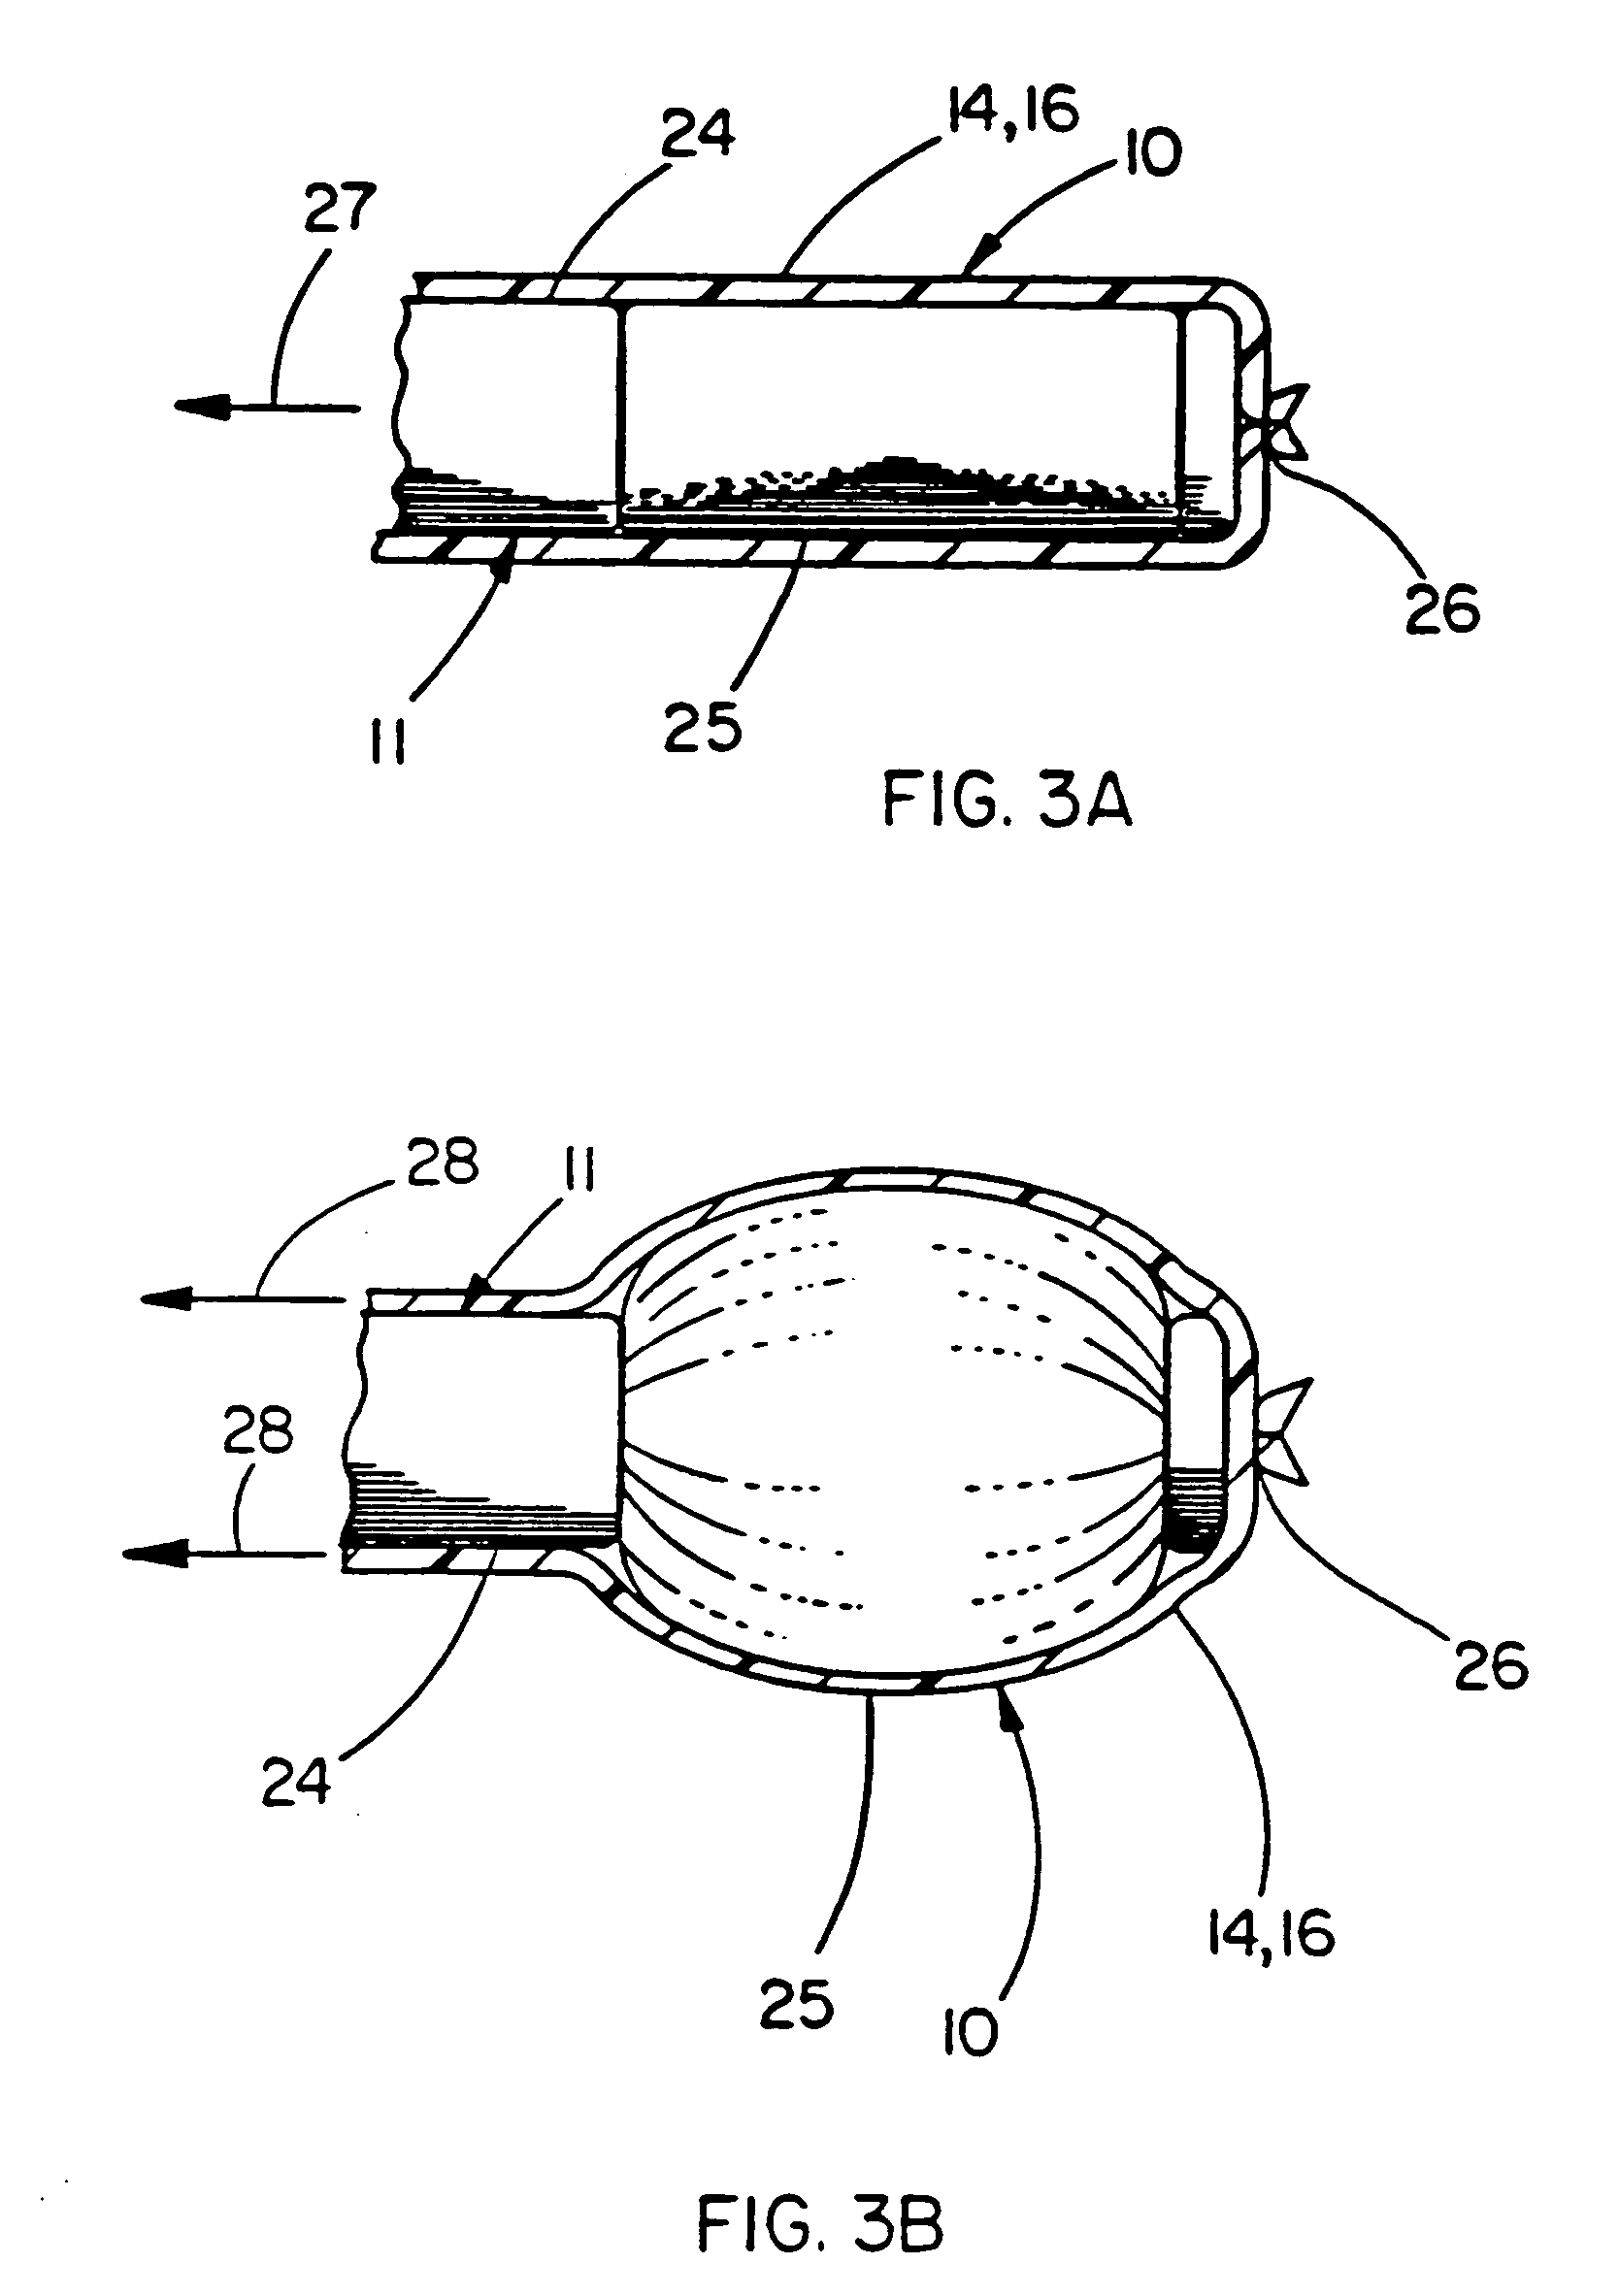 Balloon catheter device